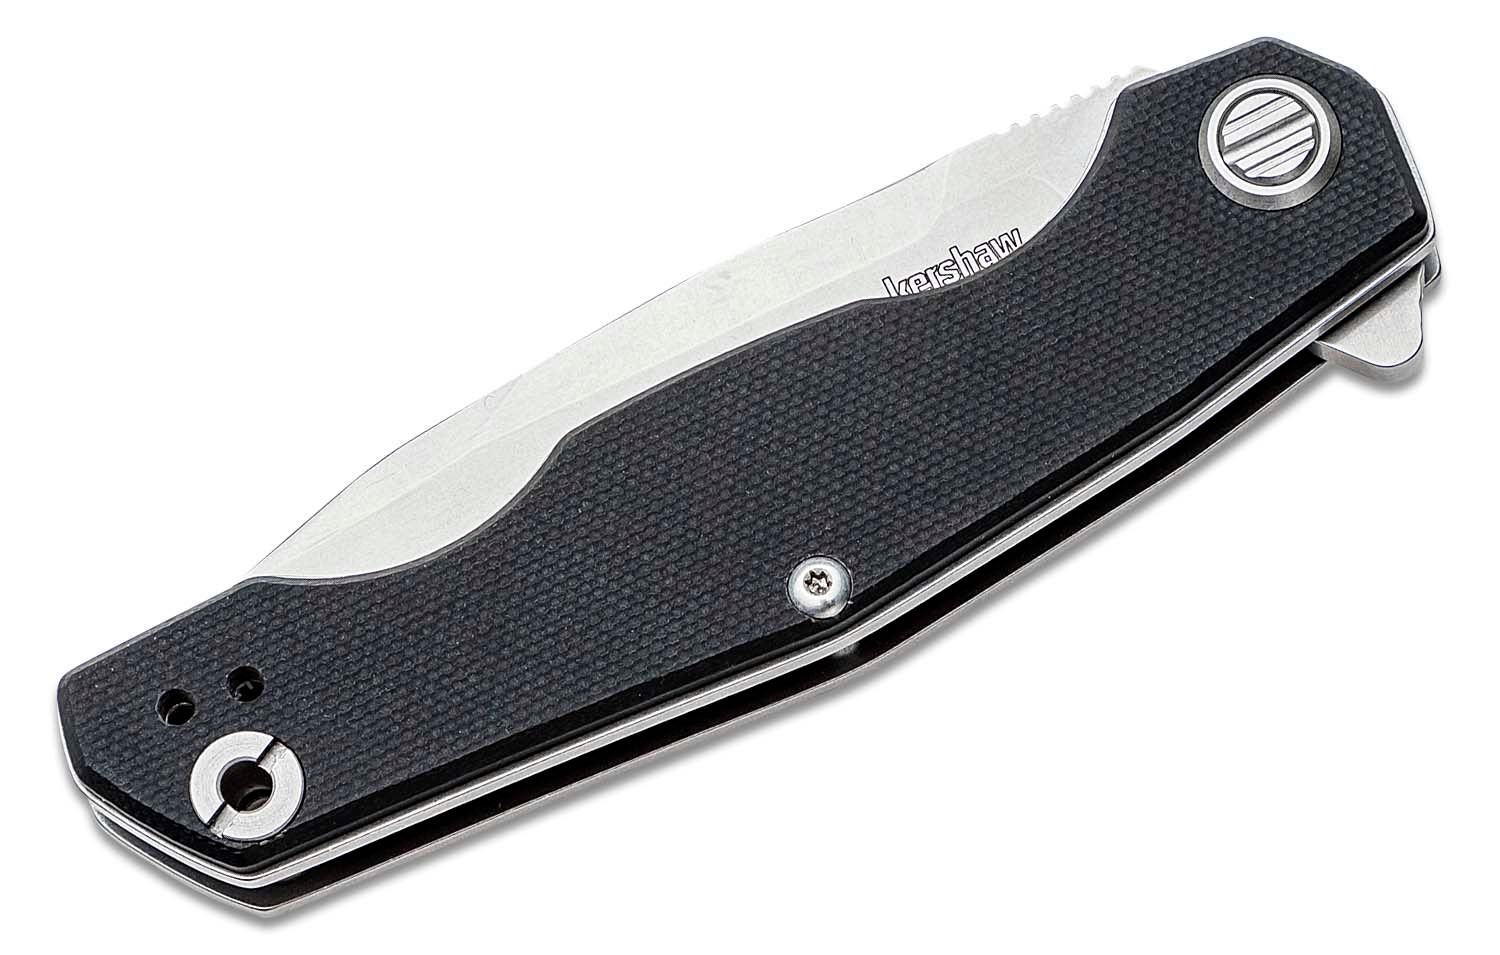  Kershaw Endgame Pocket Knife, 3.25 D2 Carbon Steel